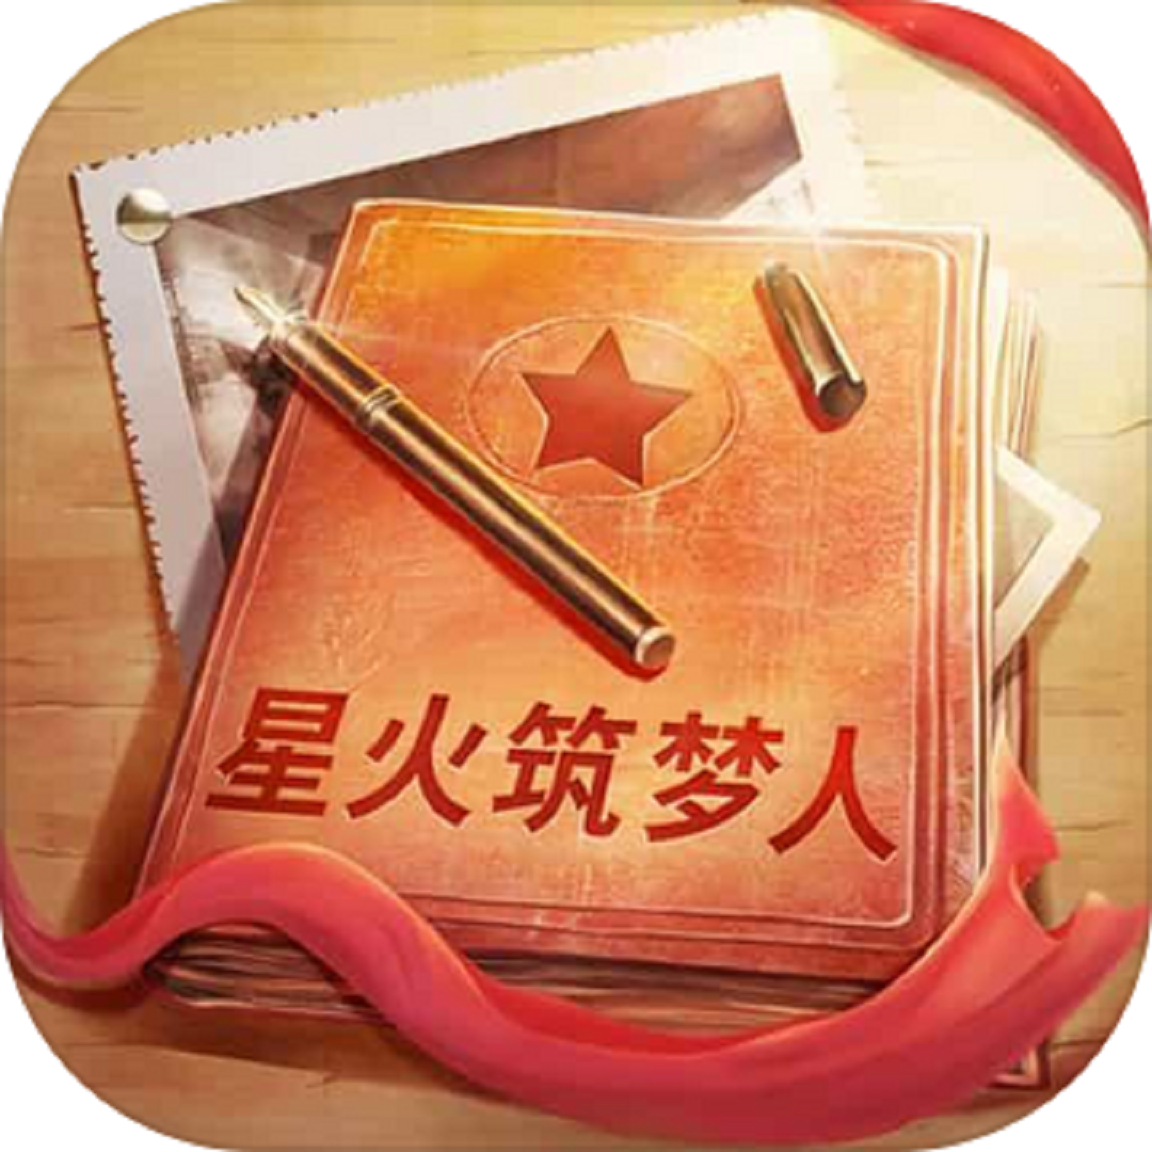 星火筑梦人游戏 1.0.2 安卓版